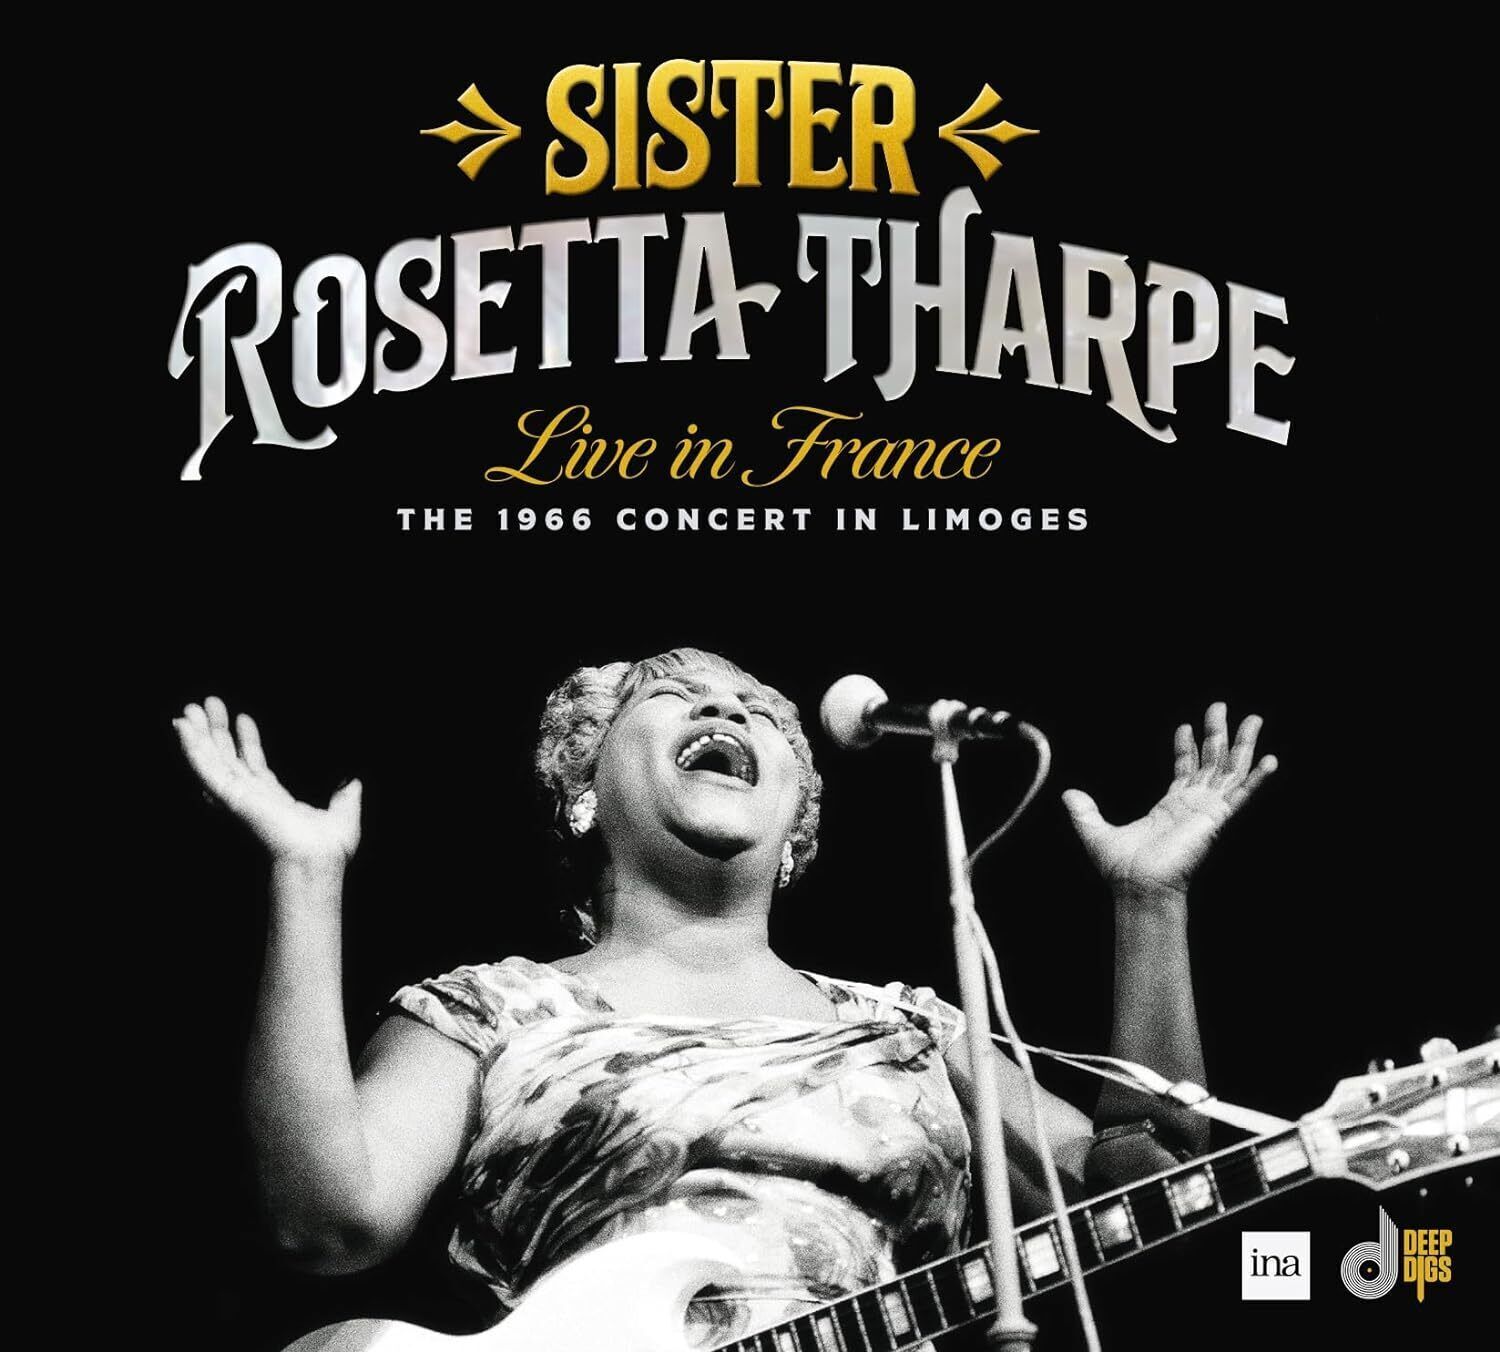 Sister Rosetta Tharpe Live in France: The 1966 Concert in Limoges (CD) Album